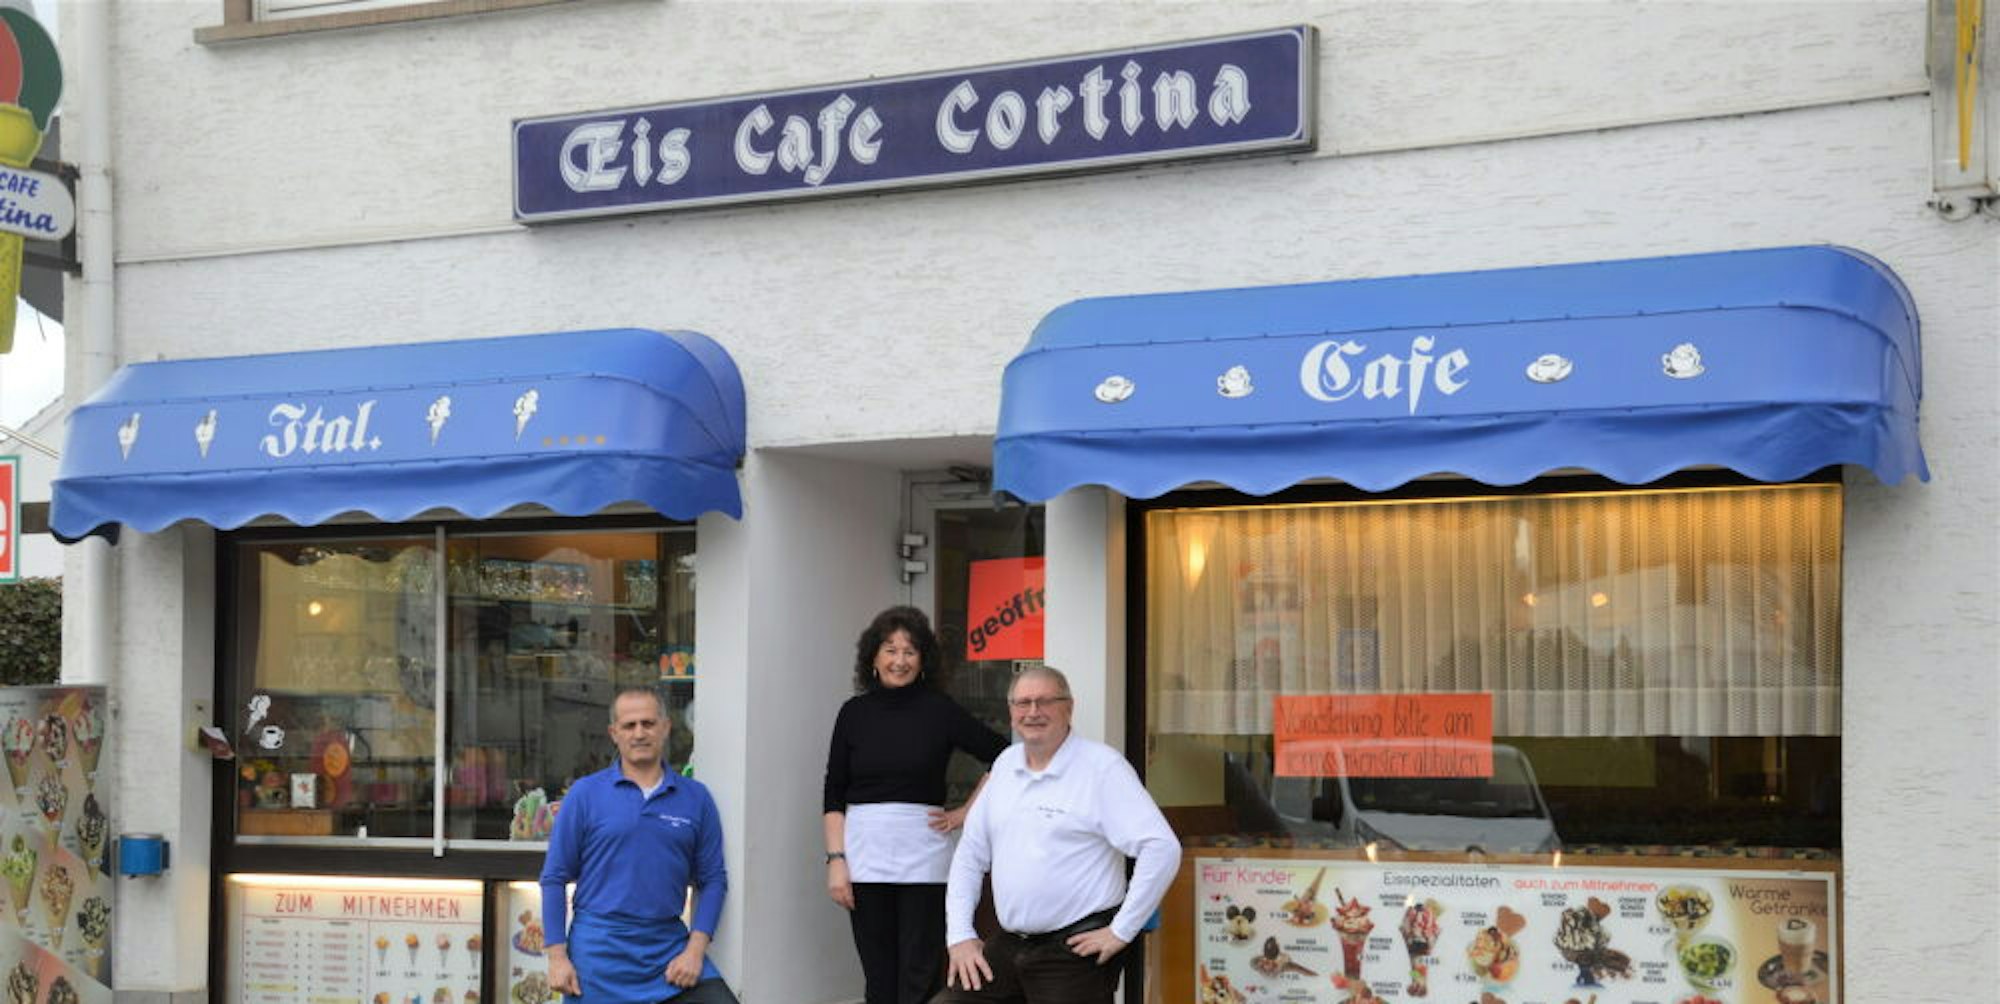 Empfangen im Eiscafé Cortina die Kunden: (v.l.) Spass Spassov, Carmen De Cesero und ihr Bruder Danilo.